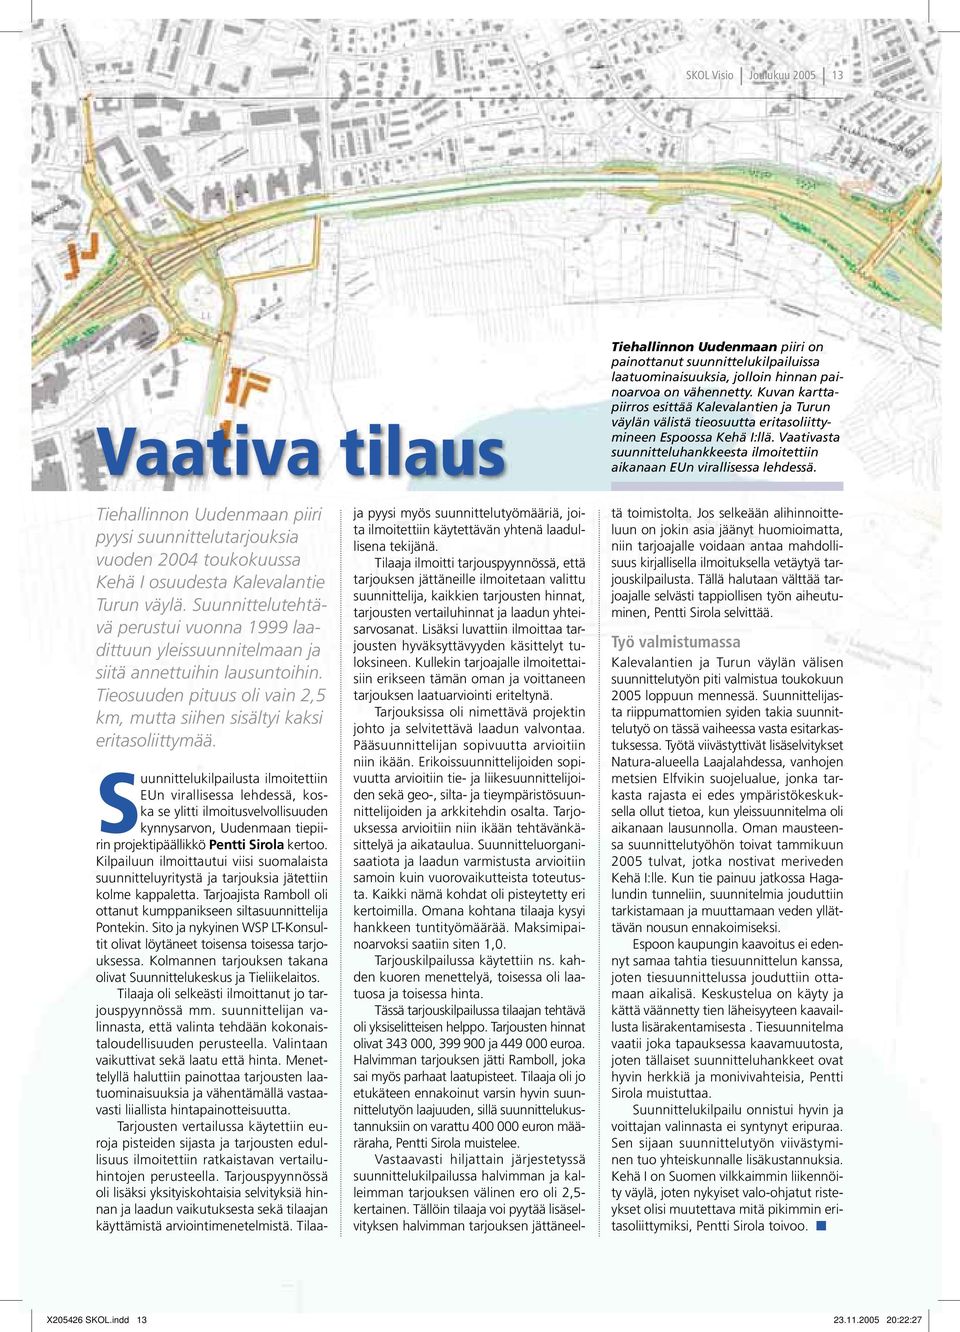 Tiehallinnon Uudenmaan piiri pyysi suunnittelutarjouksia vuoden 2004 toukokuussa Kehä I osuudesta Kalevalantie Turun väylä.